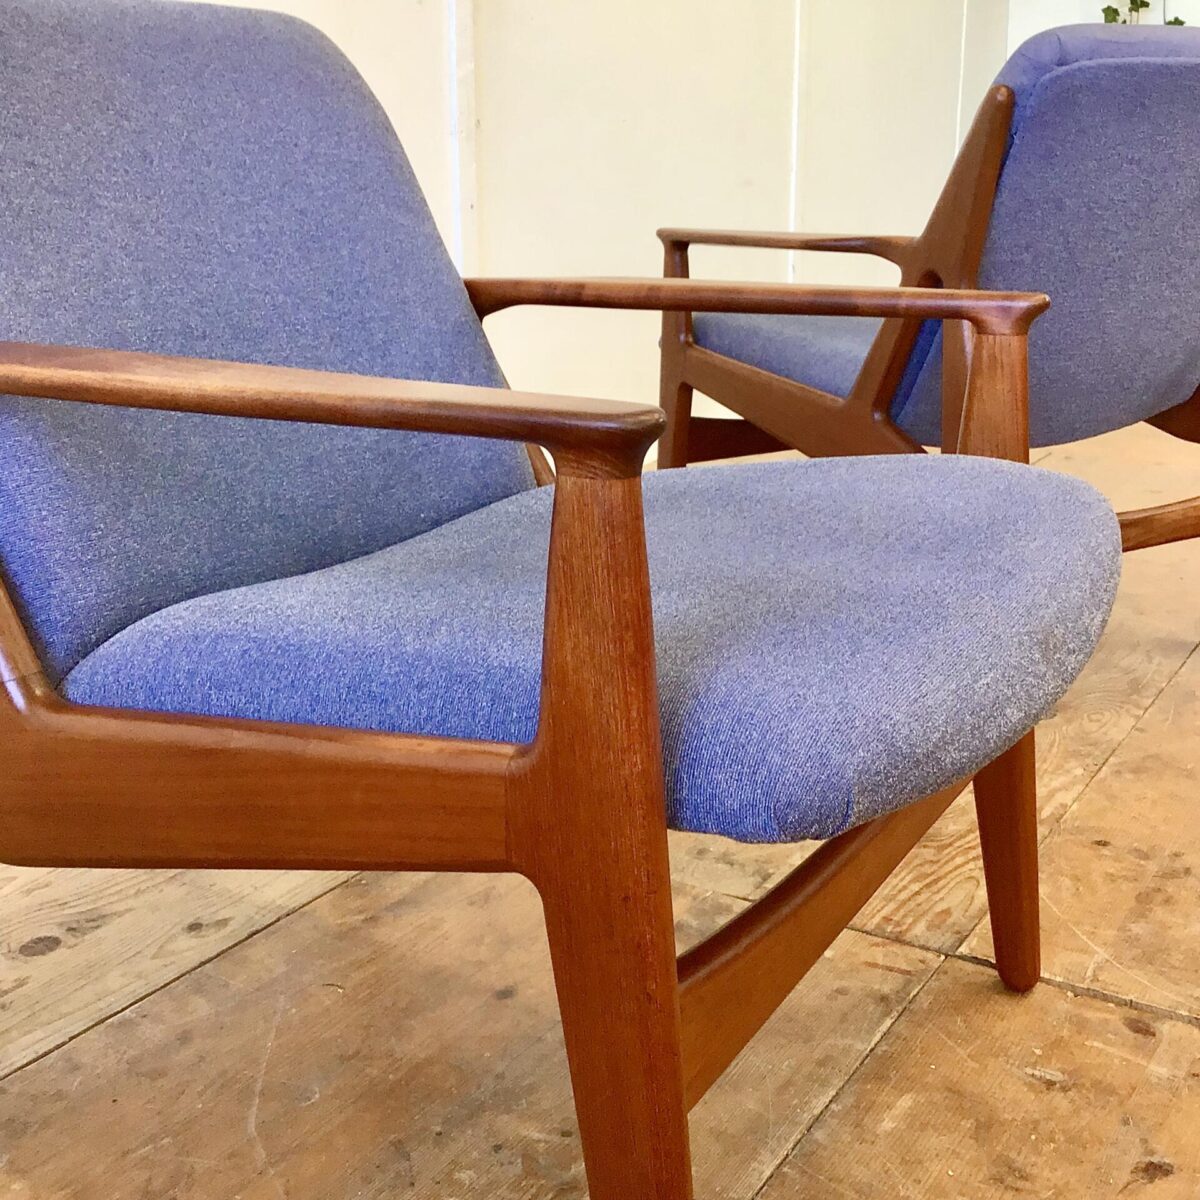 Midcentury Easy Chairs aus Teak. Das genaue Modell hab ich nicht gefunden, dürften von Arne Vodder sein. Die Sessel sind in gutem gepflegten Zustand, der Stoffbezug hat ein paar minimale kleine Flecken. Preis für das Set. 